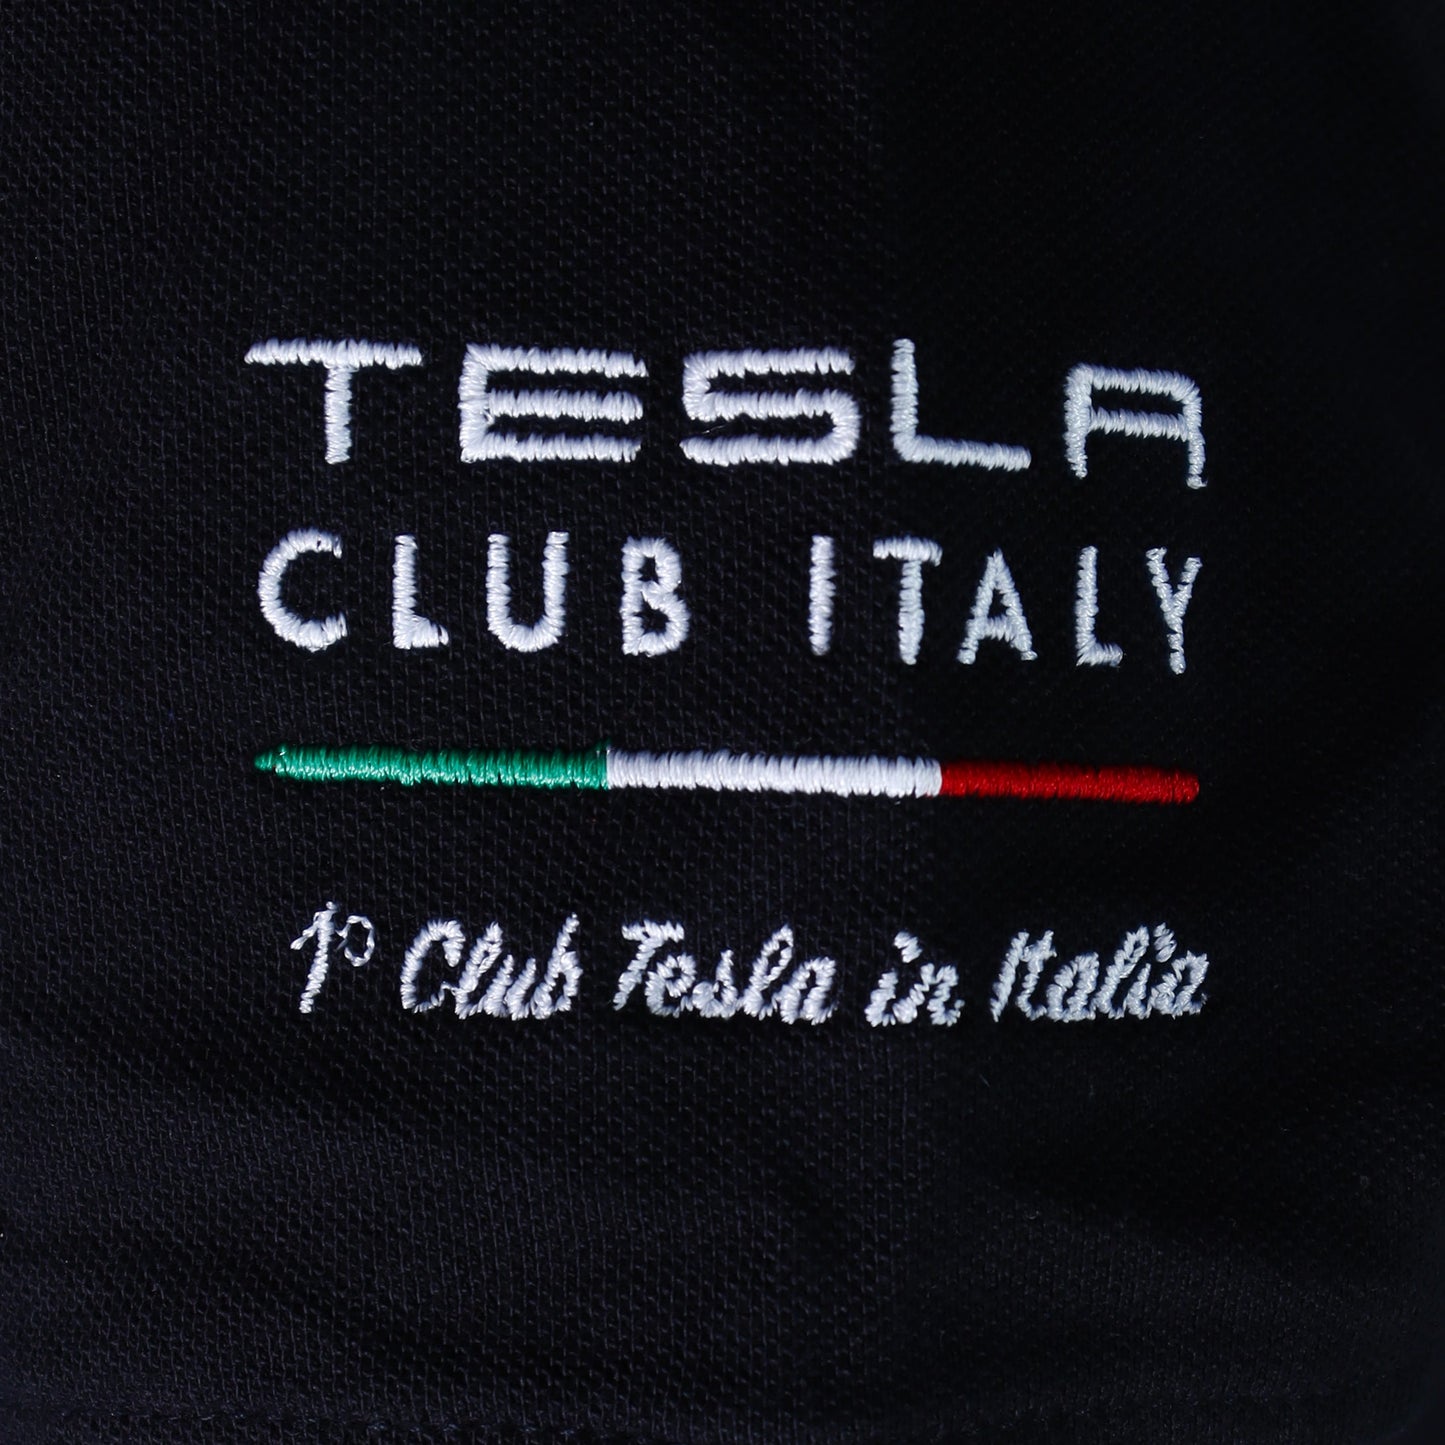 Polo bambino/bambina (unisex) Tesla Club Italy, colore nero